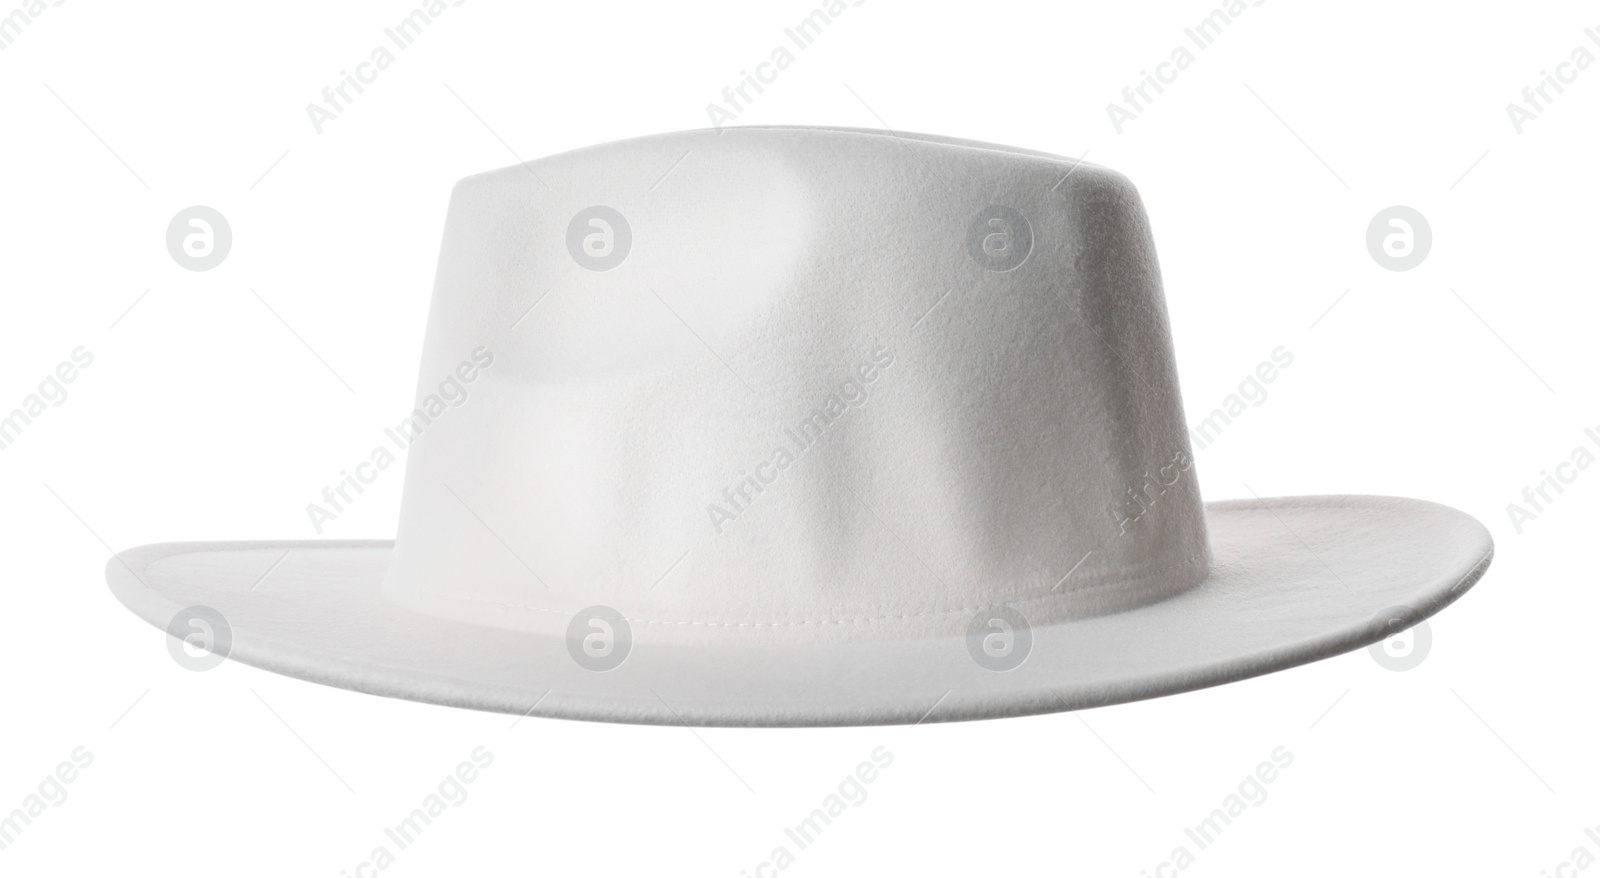 Photo of Stylish hat isolated on white. Trendy headdress